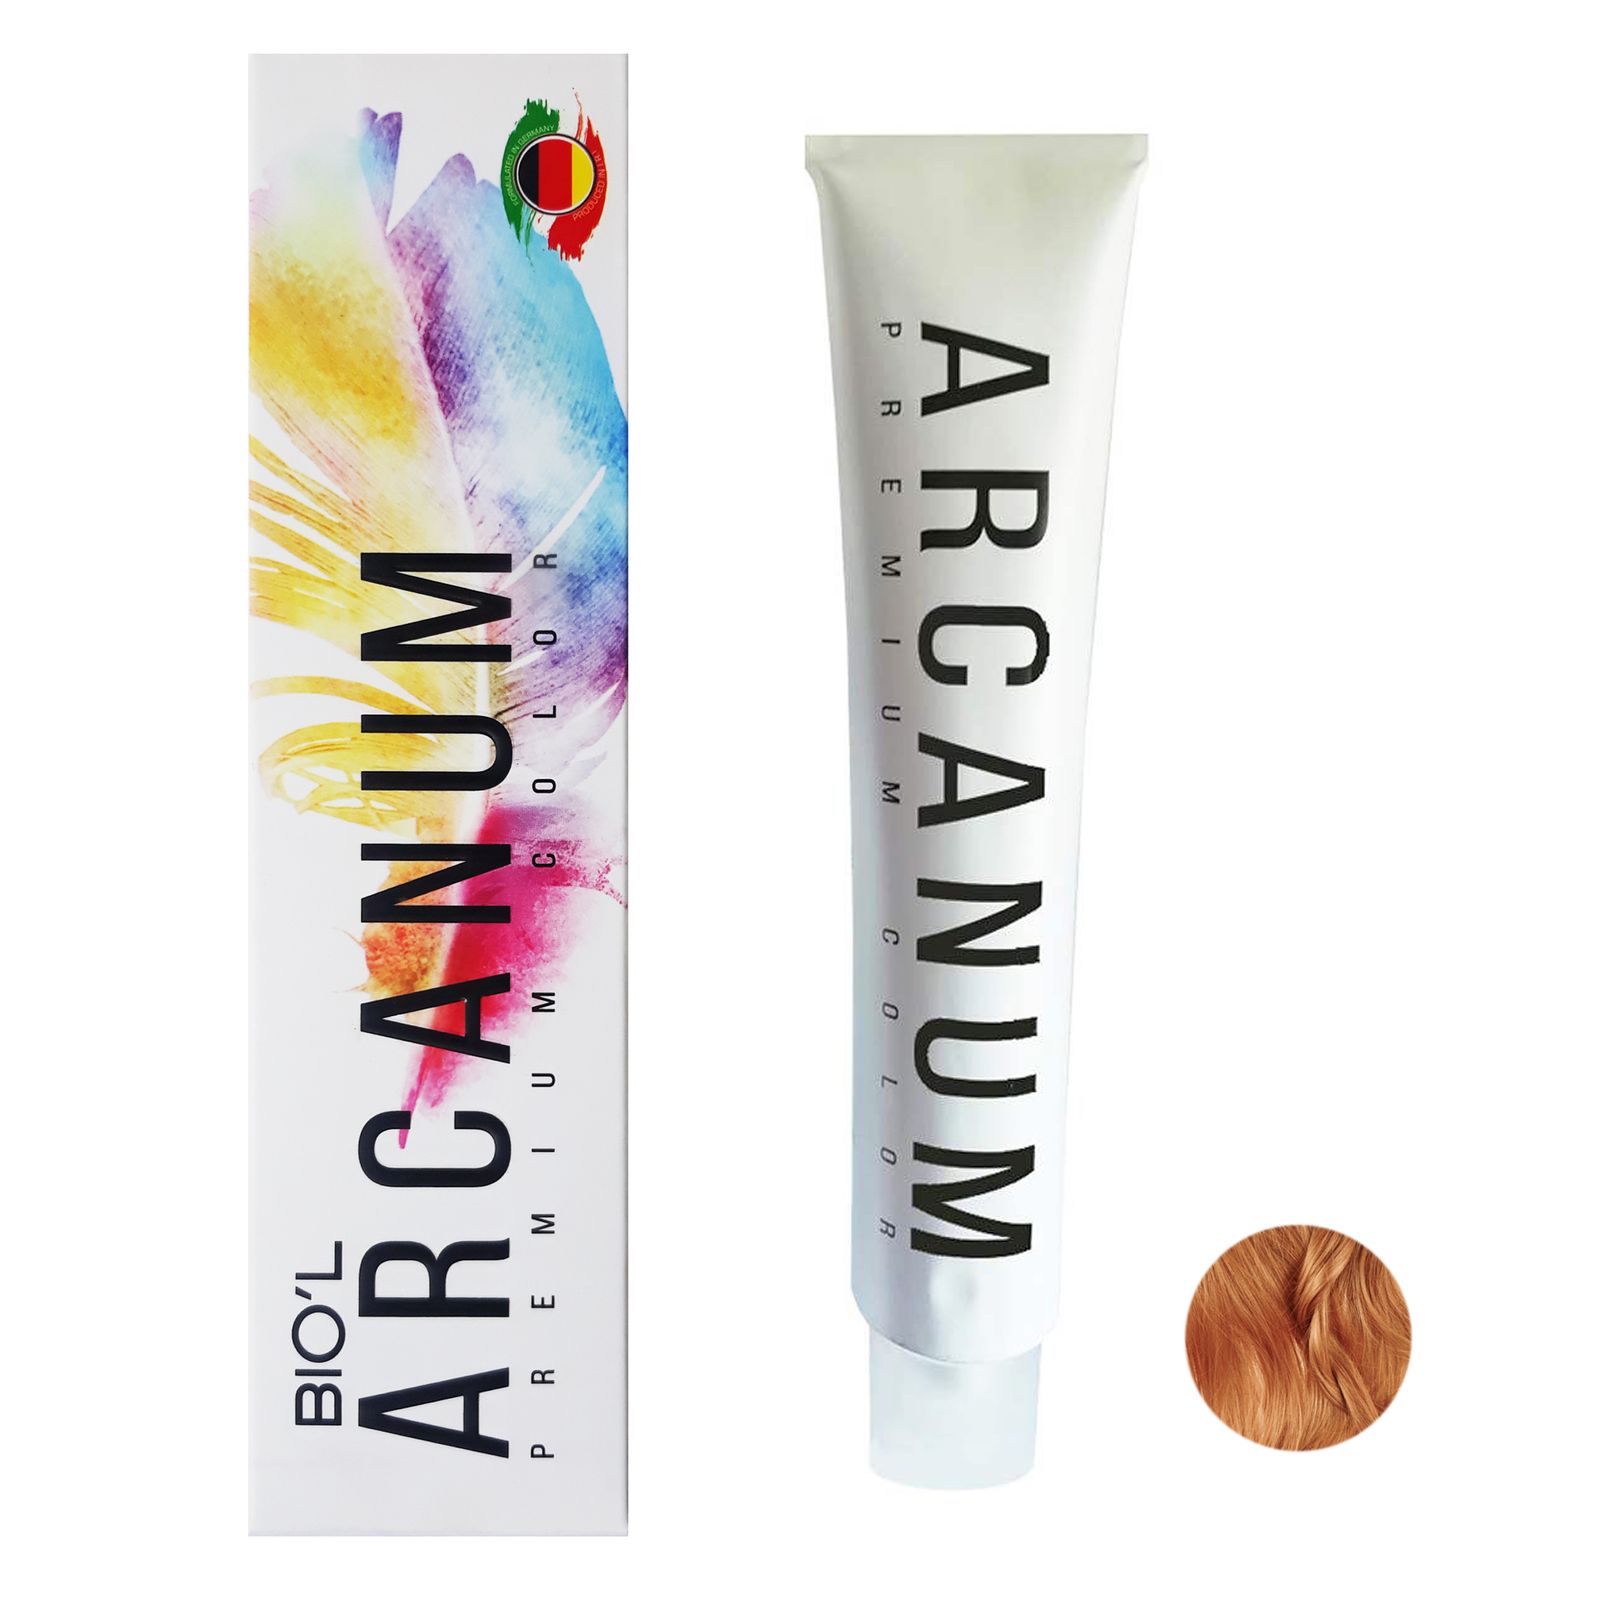  رنگ مو بیول مدل Arcanum شماره 8.84 حجم 120 میلی لیتر رنگ بلوند شکلات پرتغالی روشن -  - 1